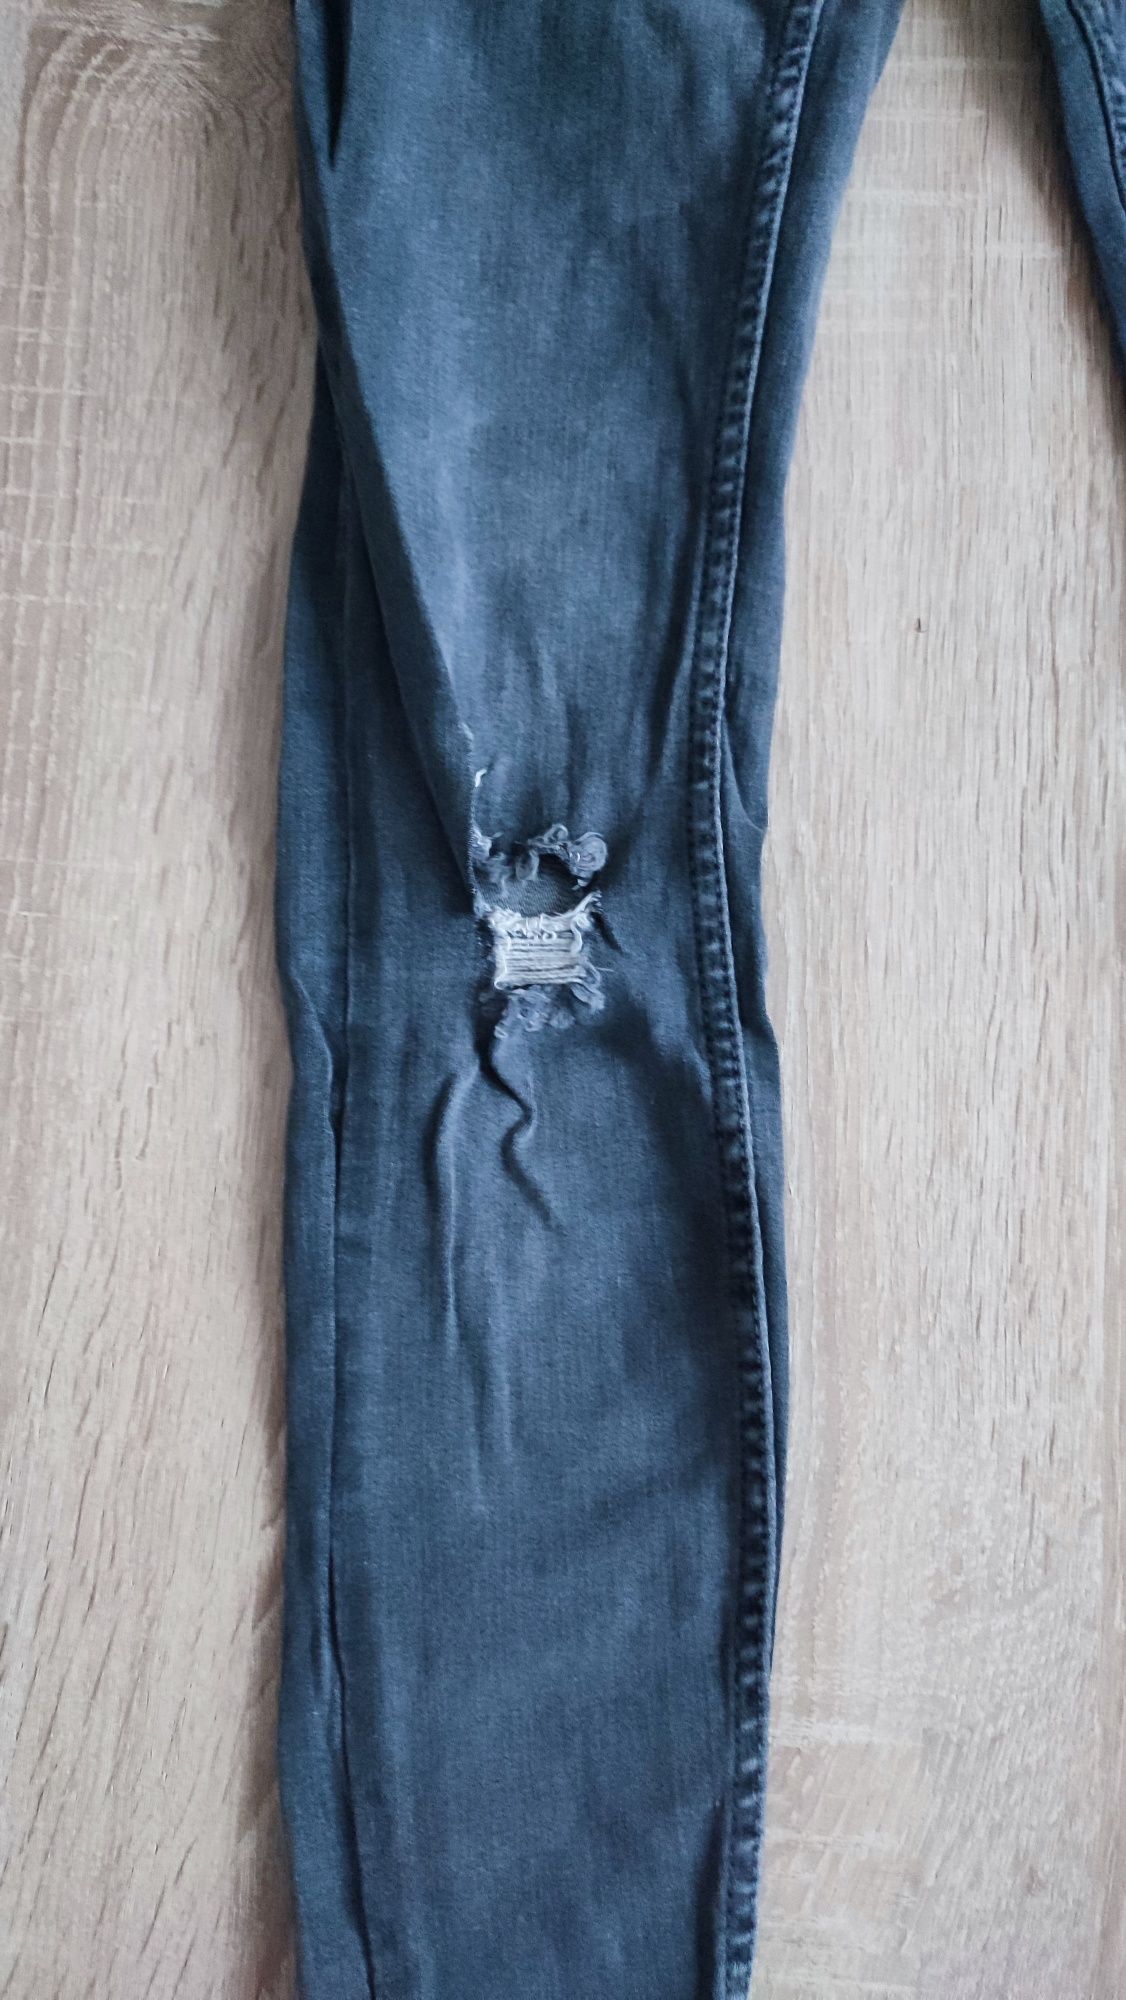 Ciemno szare jeansy z dziurami rozmiar 26 (mniejsze XS)